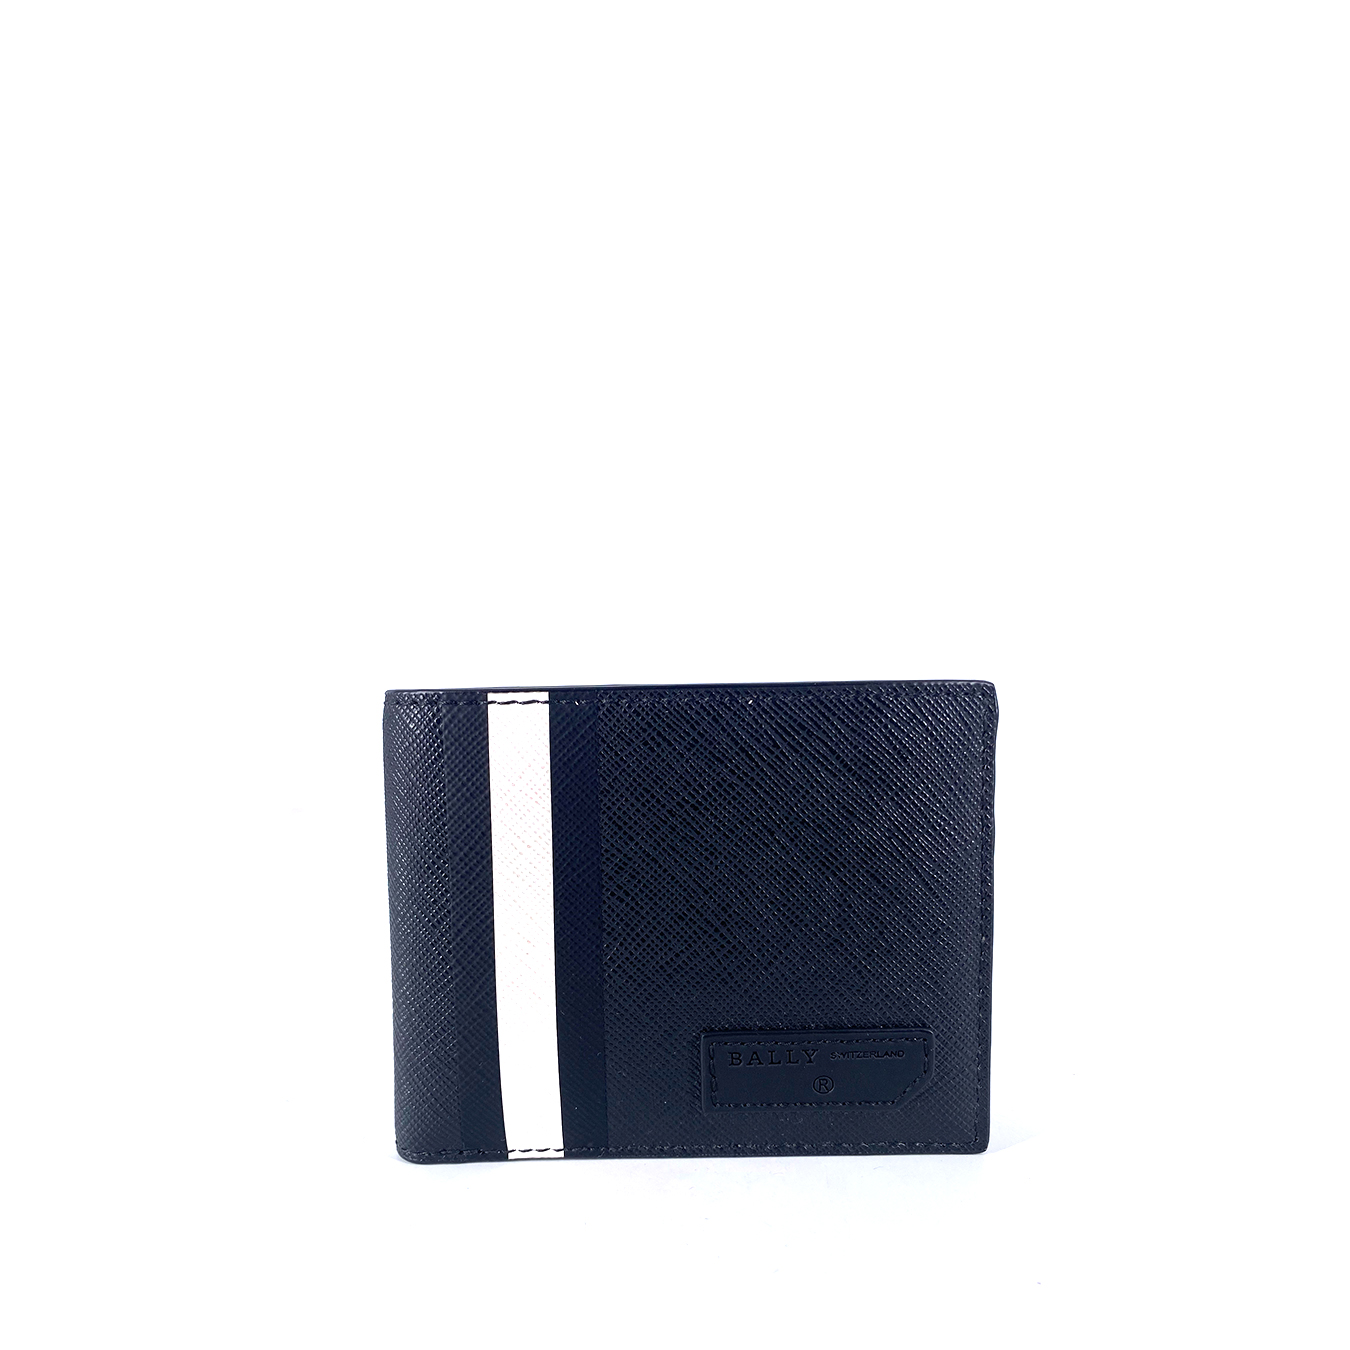 Bally Bevye Bi-Fold Wallet Black White Stripe